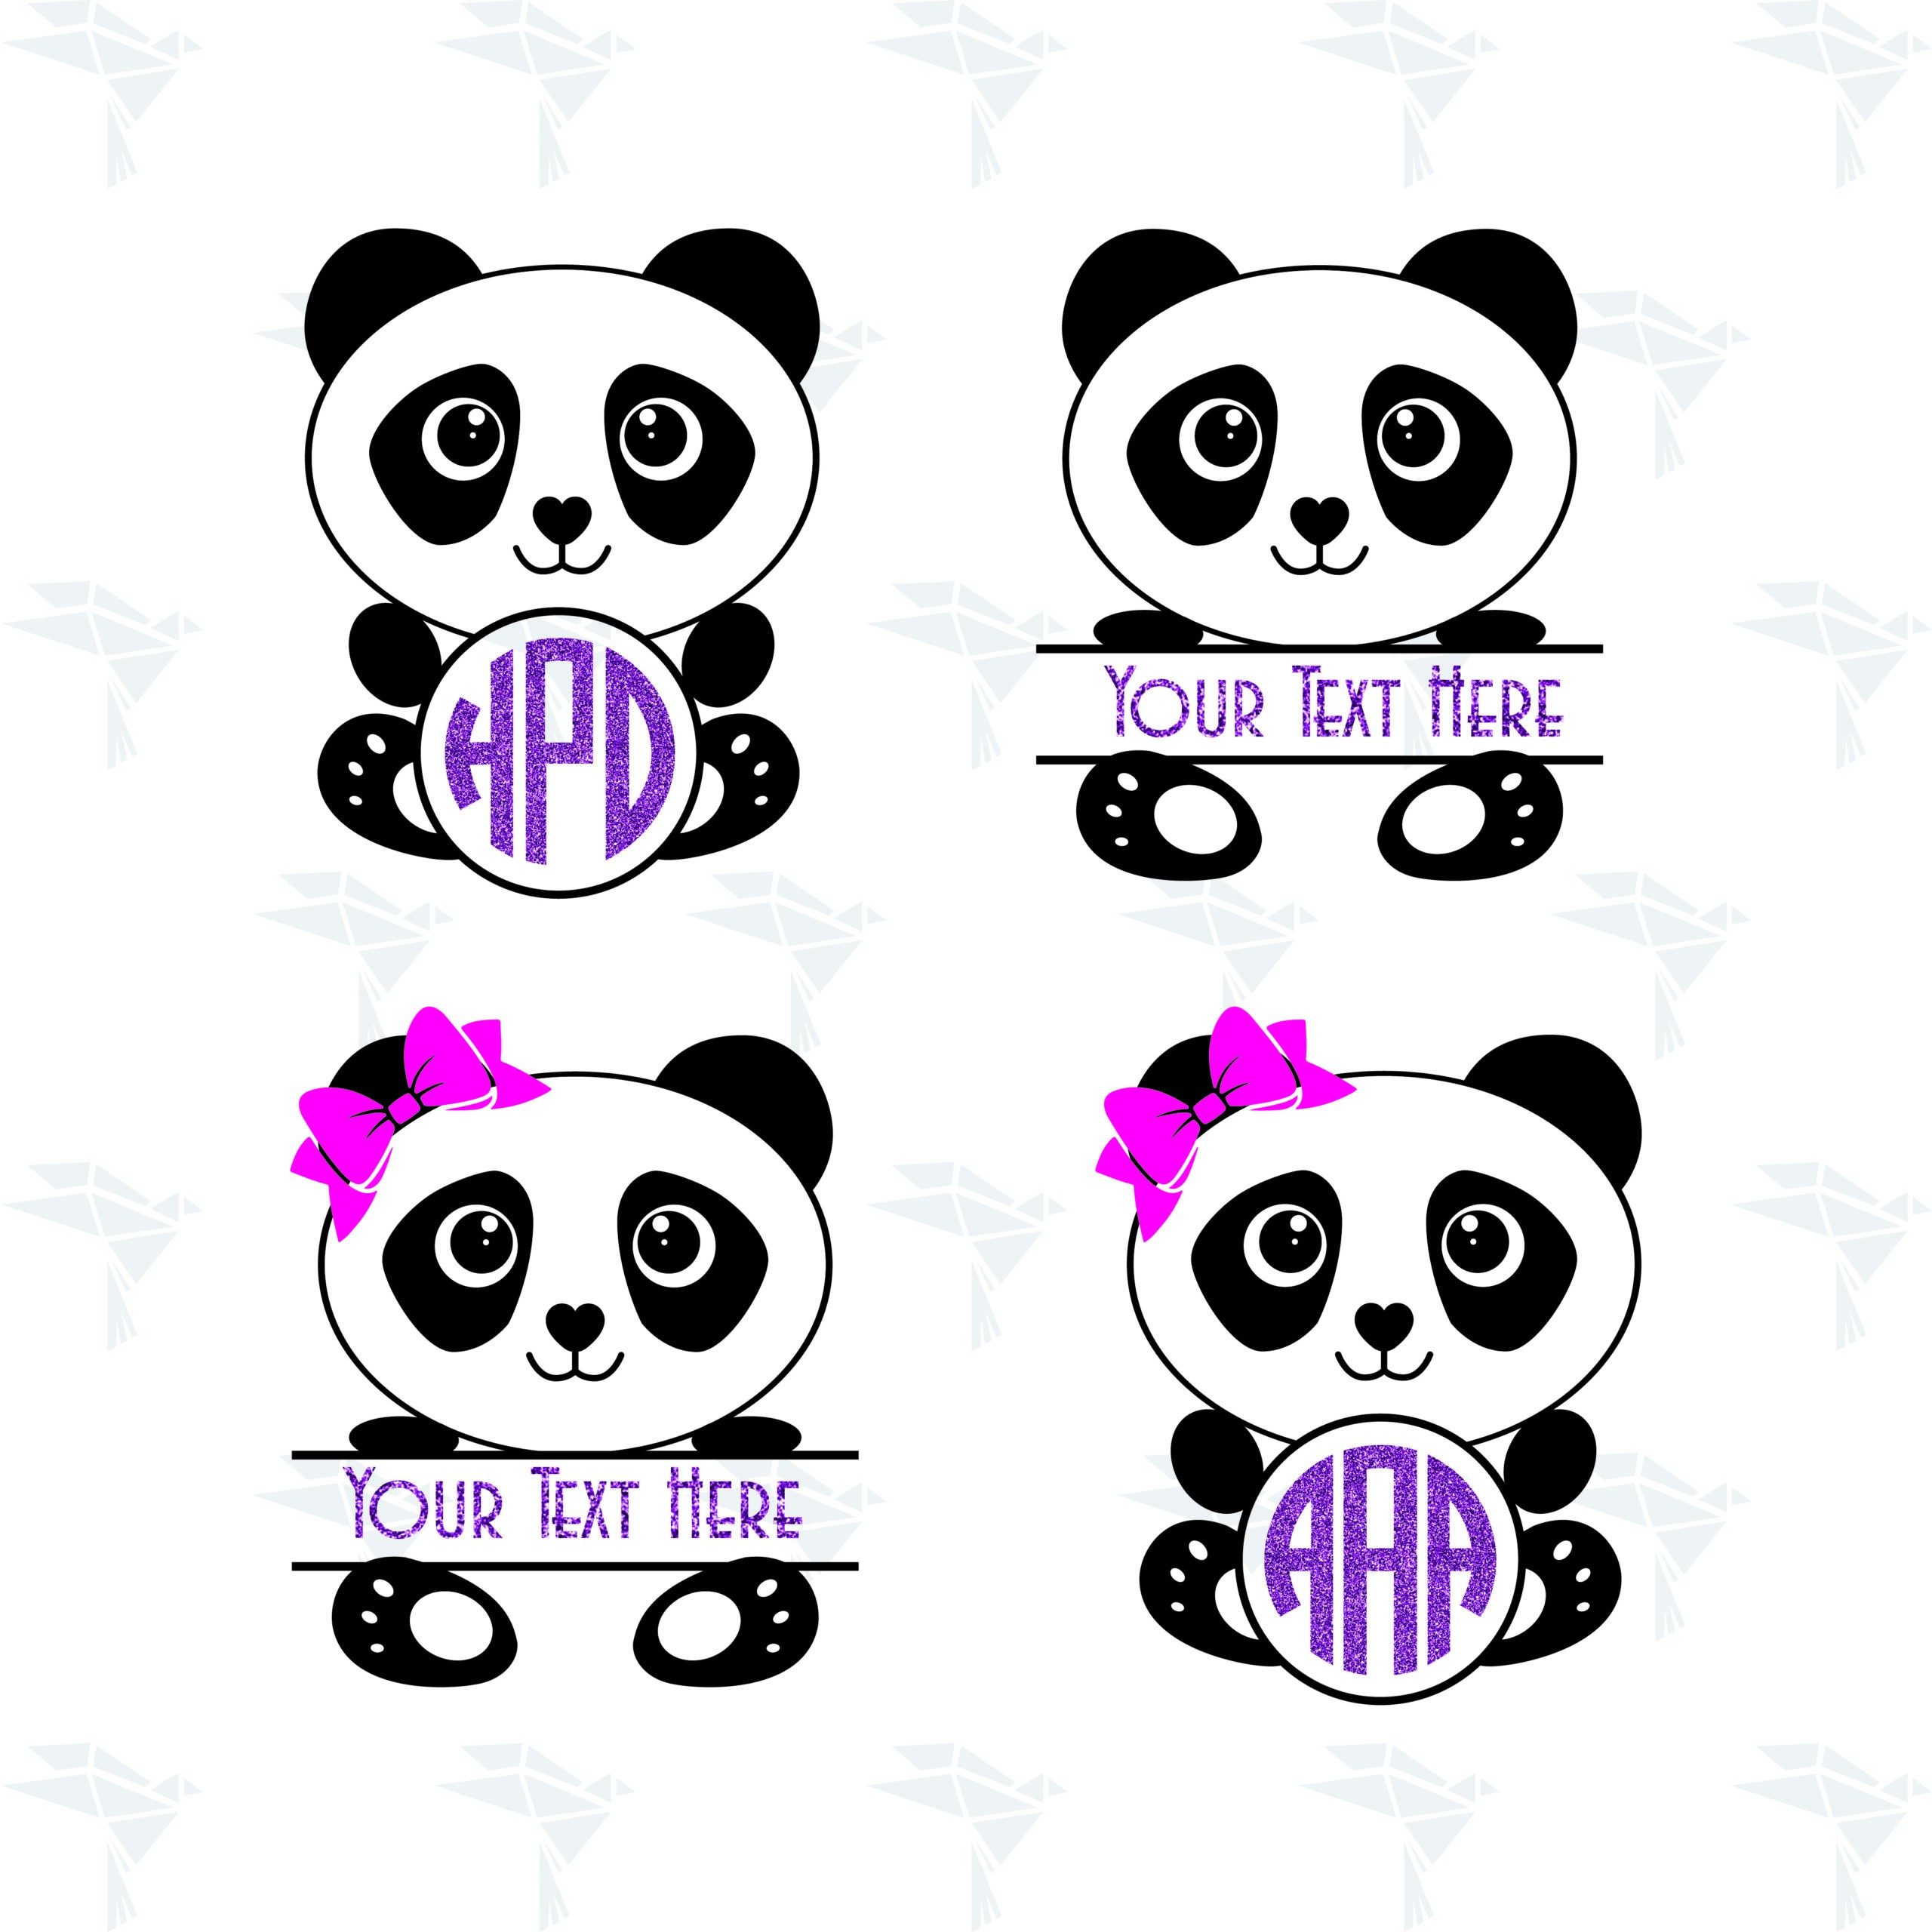 Superflat Monogram Panda And His Friends